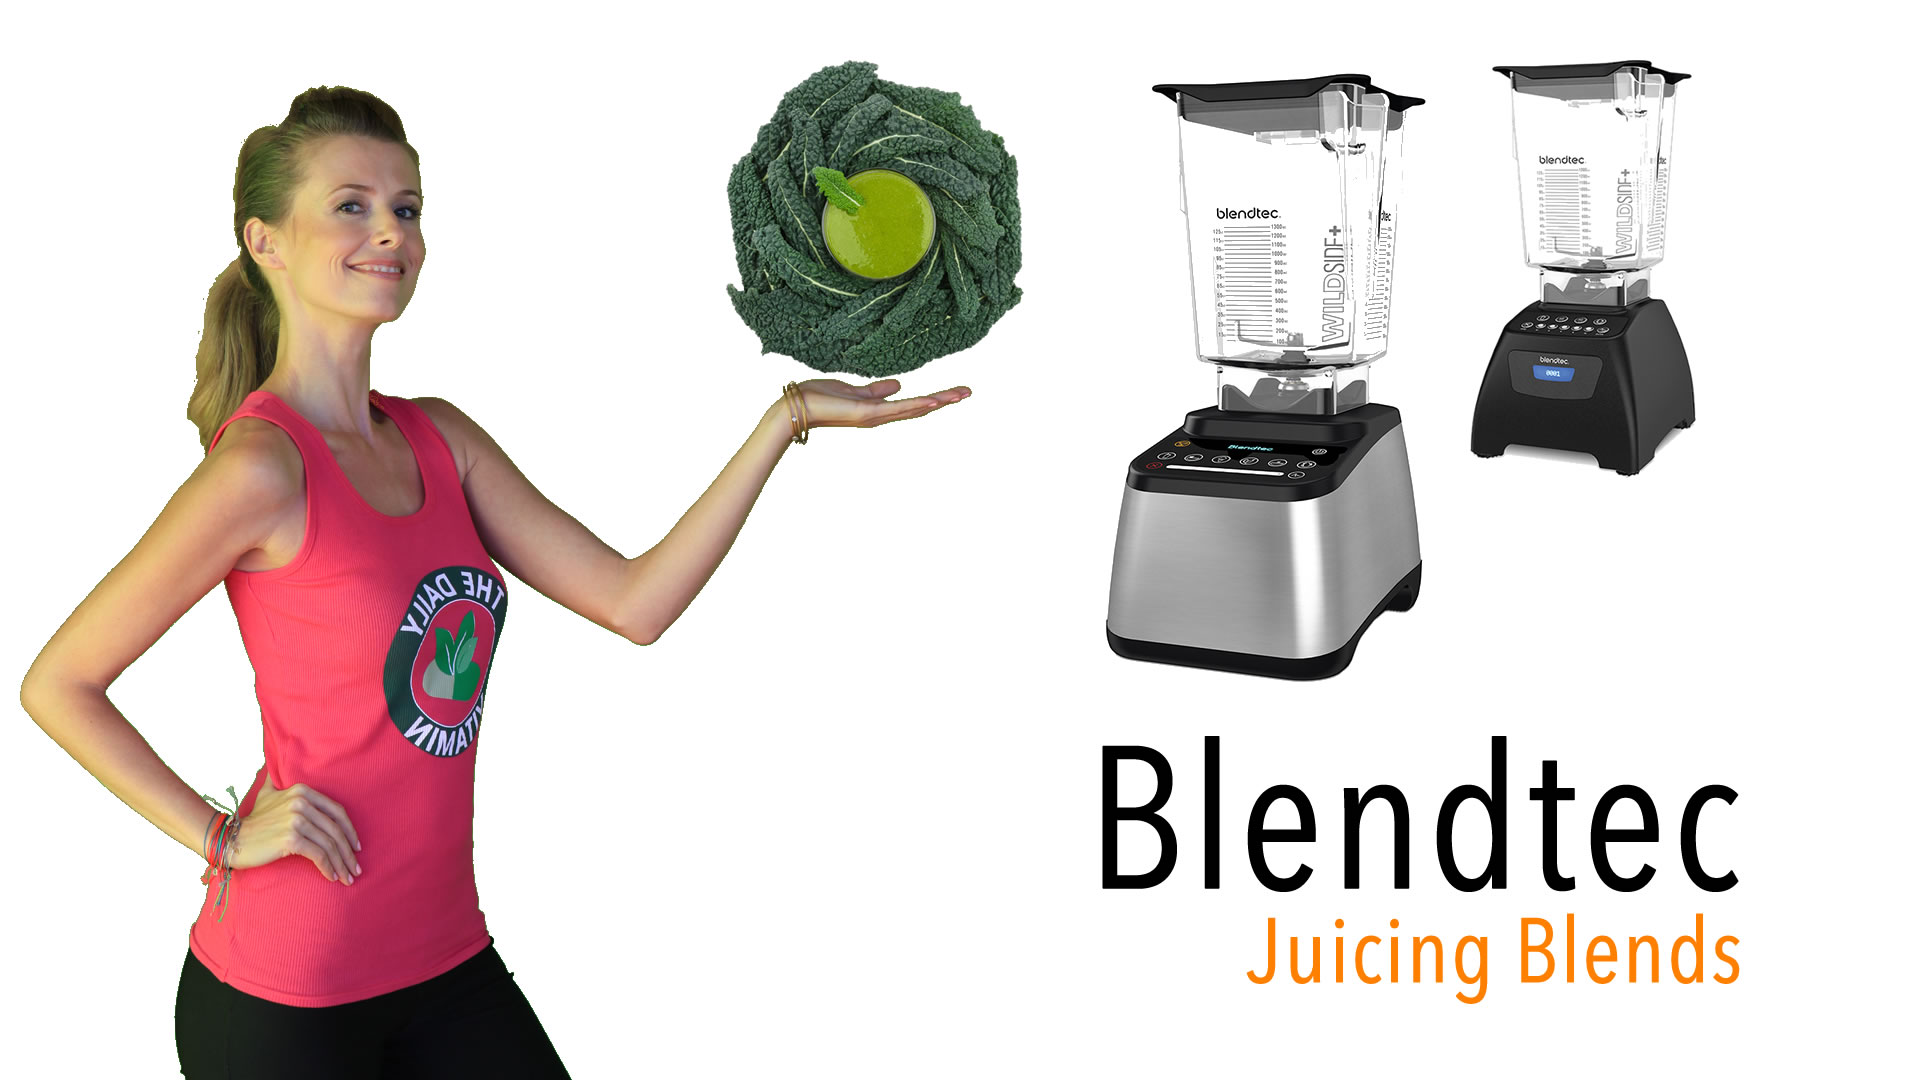 Blendtec juicing, blendtec, Blendtech, Best blender, blender, blenders, blend, blends, blender juicing, juicing, juice, recipe, recipes, juicing recipes, juice recipes, juice recipe, juicing recipe, juice recipe, blendtech, best, commercial blender, juice shop blender, smoothie blender, commercial blenders, best blender for smoothies, best blender for juicing, juicing blender, blended, blending, blends, blend, blender juicer, blender vs juicer, juicer vs blender, juicing vs blending, blending vs juicing, high end blenders, high power blender, wildside, wildside jar, blendtec vs blendtec,